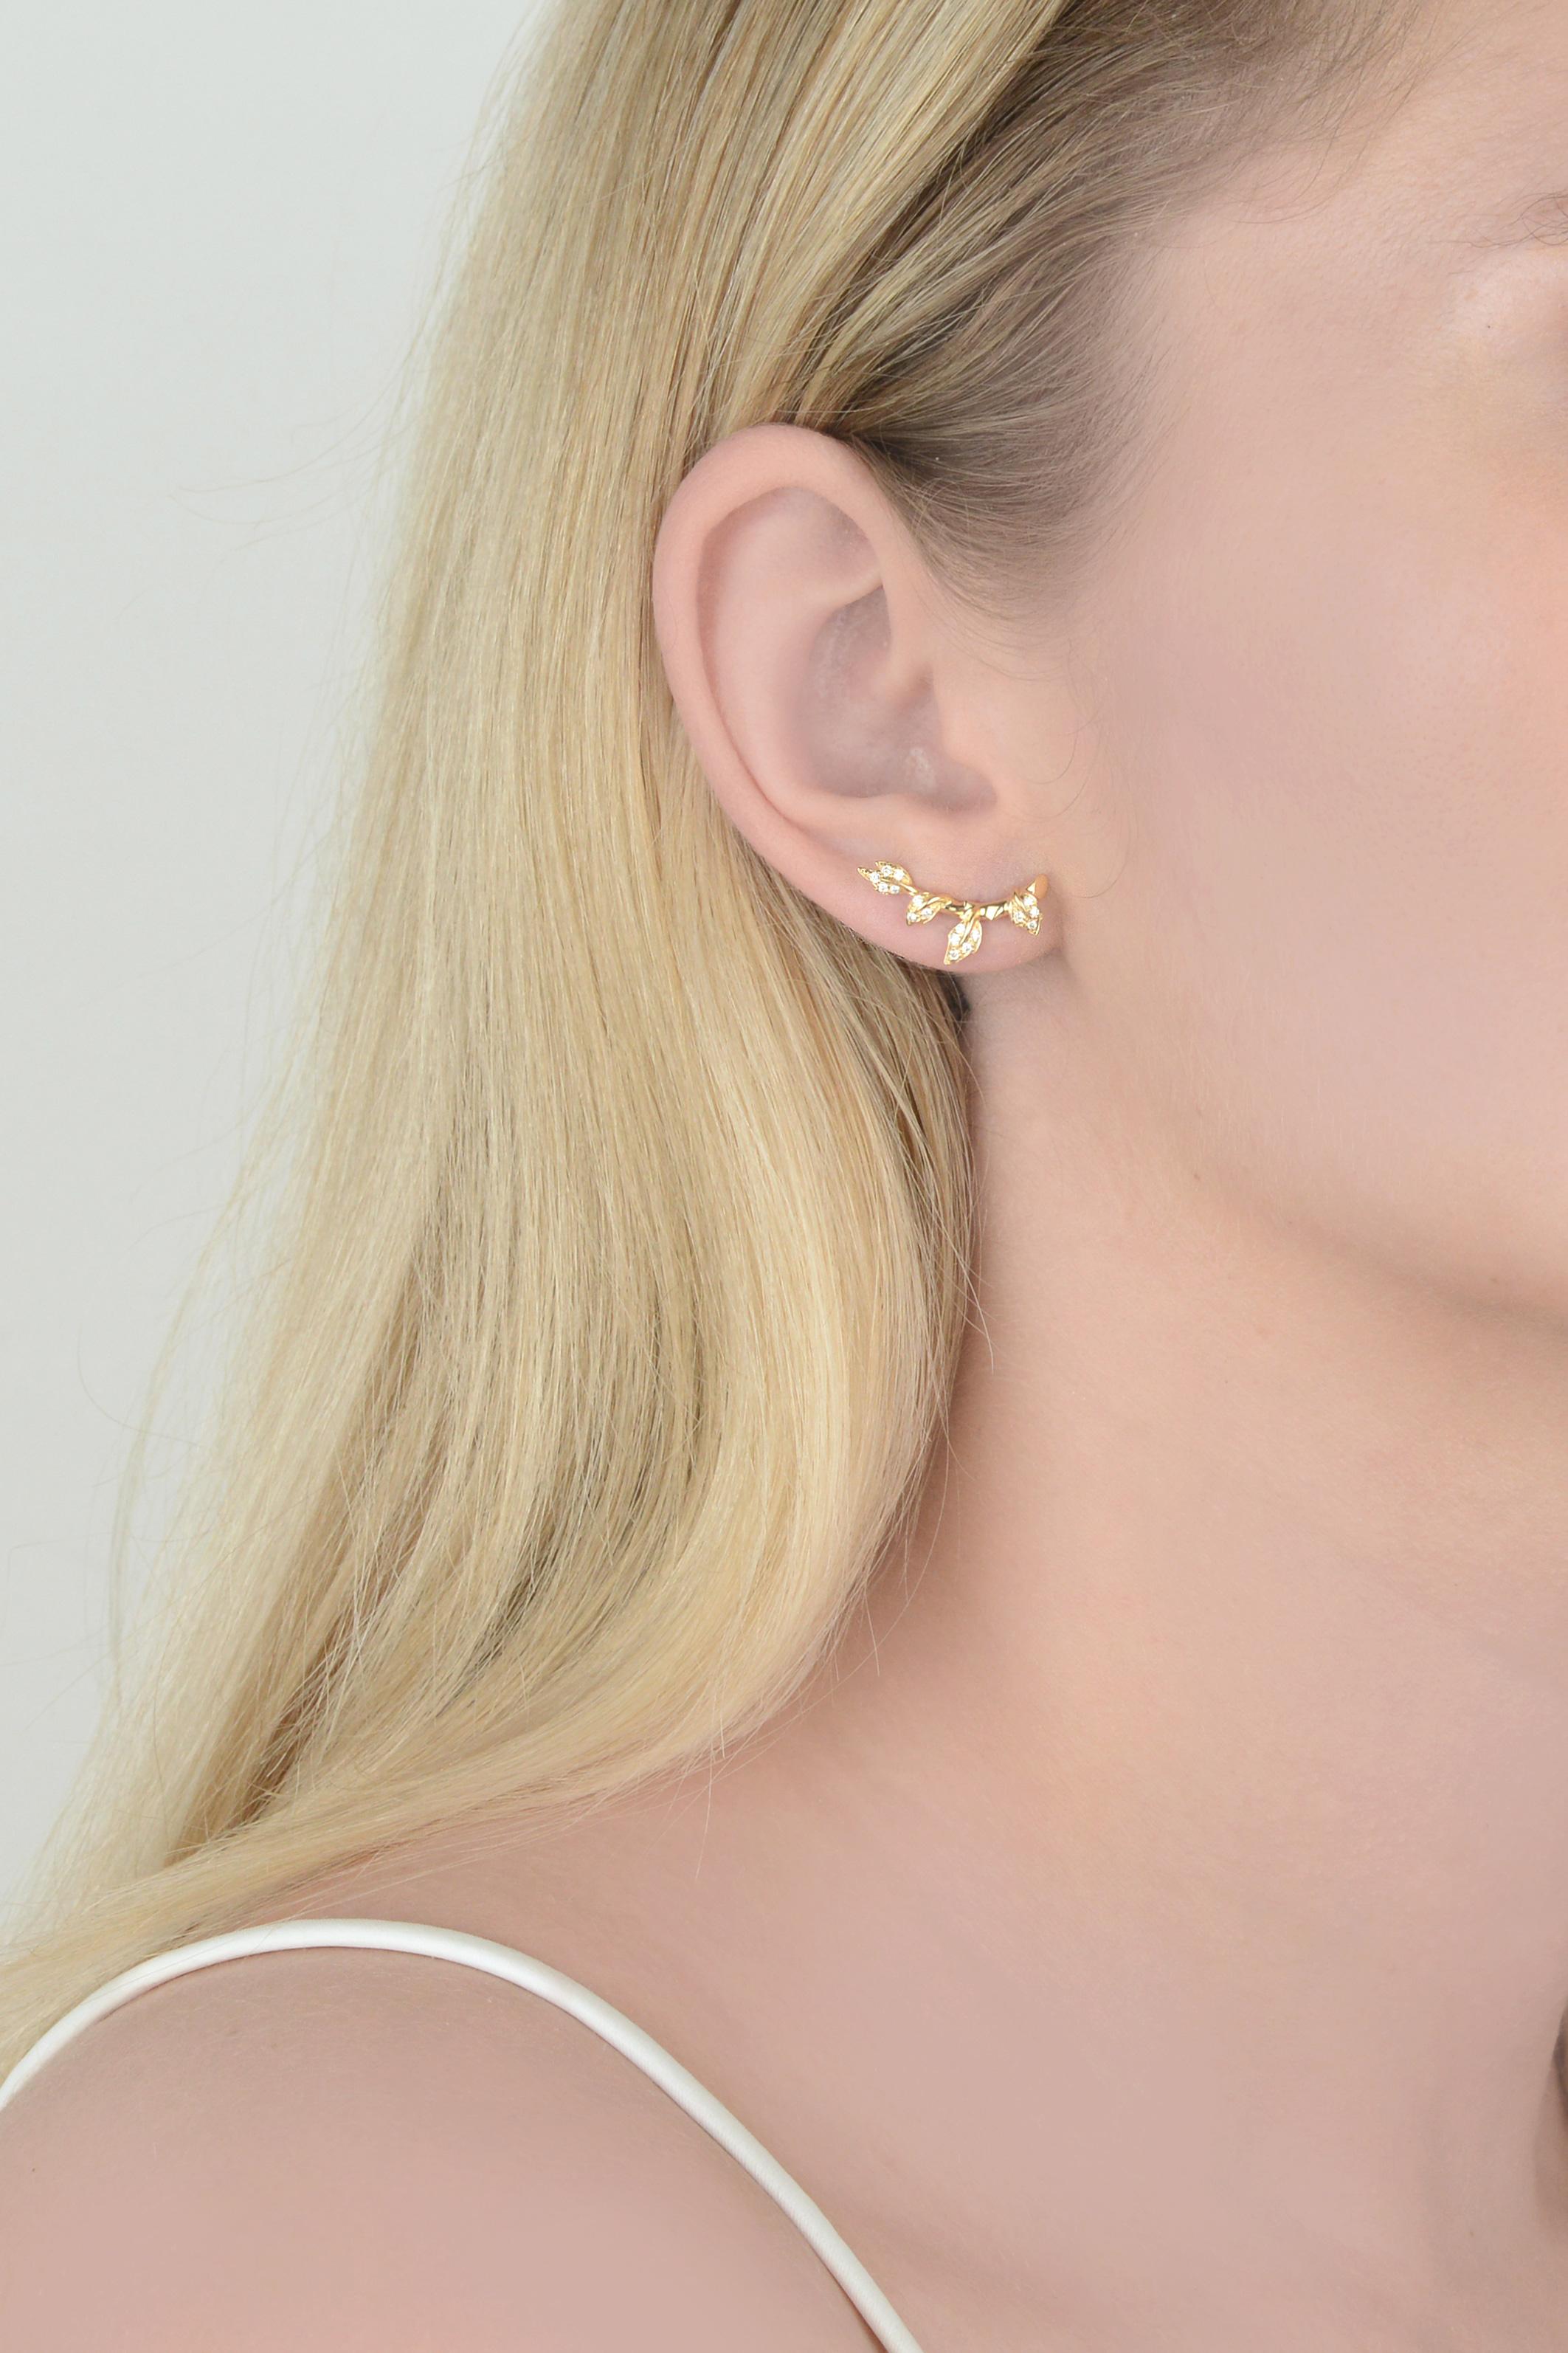 Women's or Men's Yvonne Leon's Liane Stud Earring in 18 Carat Yellow Gold and Diamonds